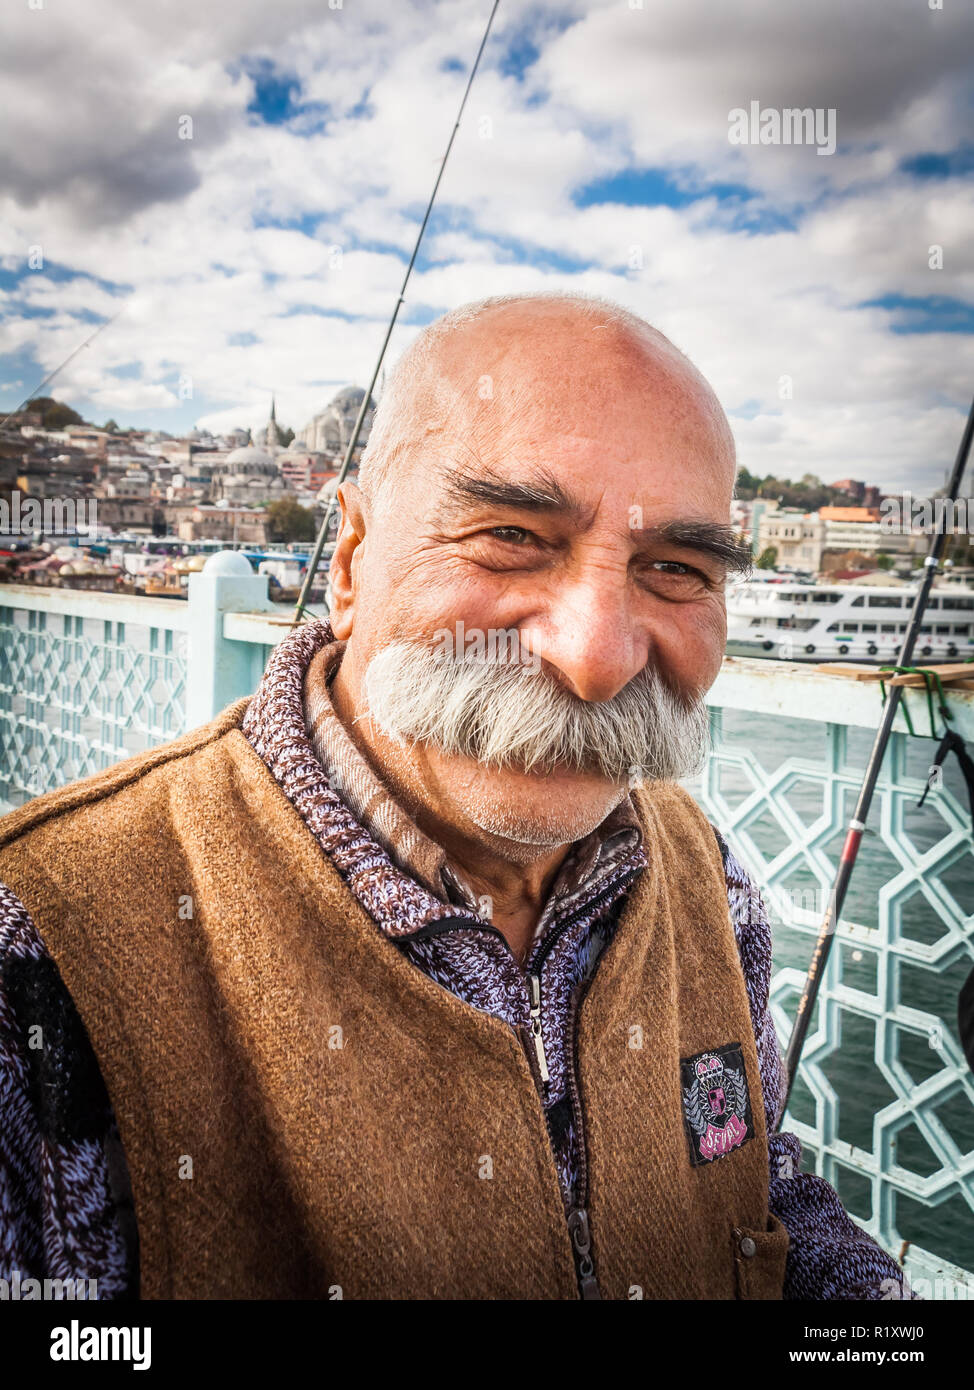 Estambul, Turquía, Noviembre 9, 2012: hombre turco con increíble bigote. Foto de stock